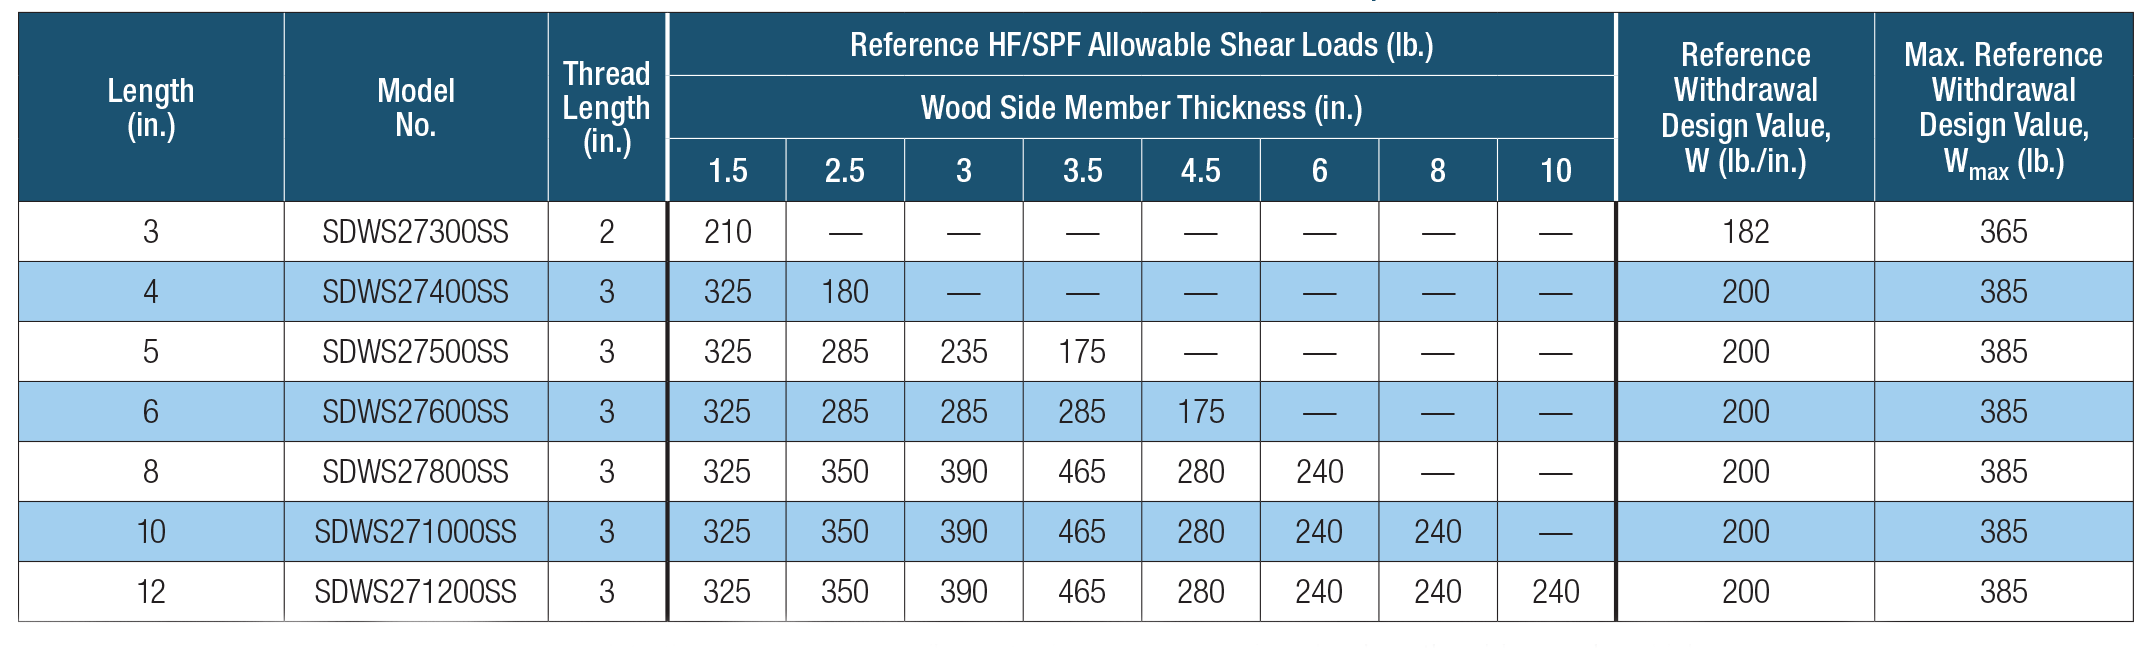 SDWS Timber SS — Allowable Shear Loads — Hem-Fir, Spruce-Pine-Fir Lumber